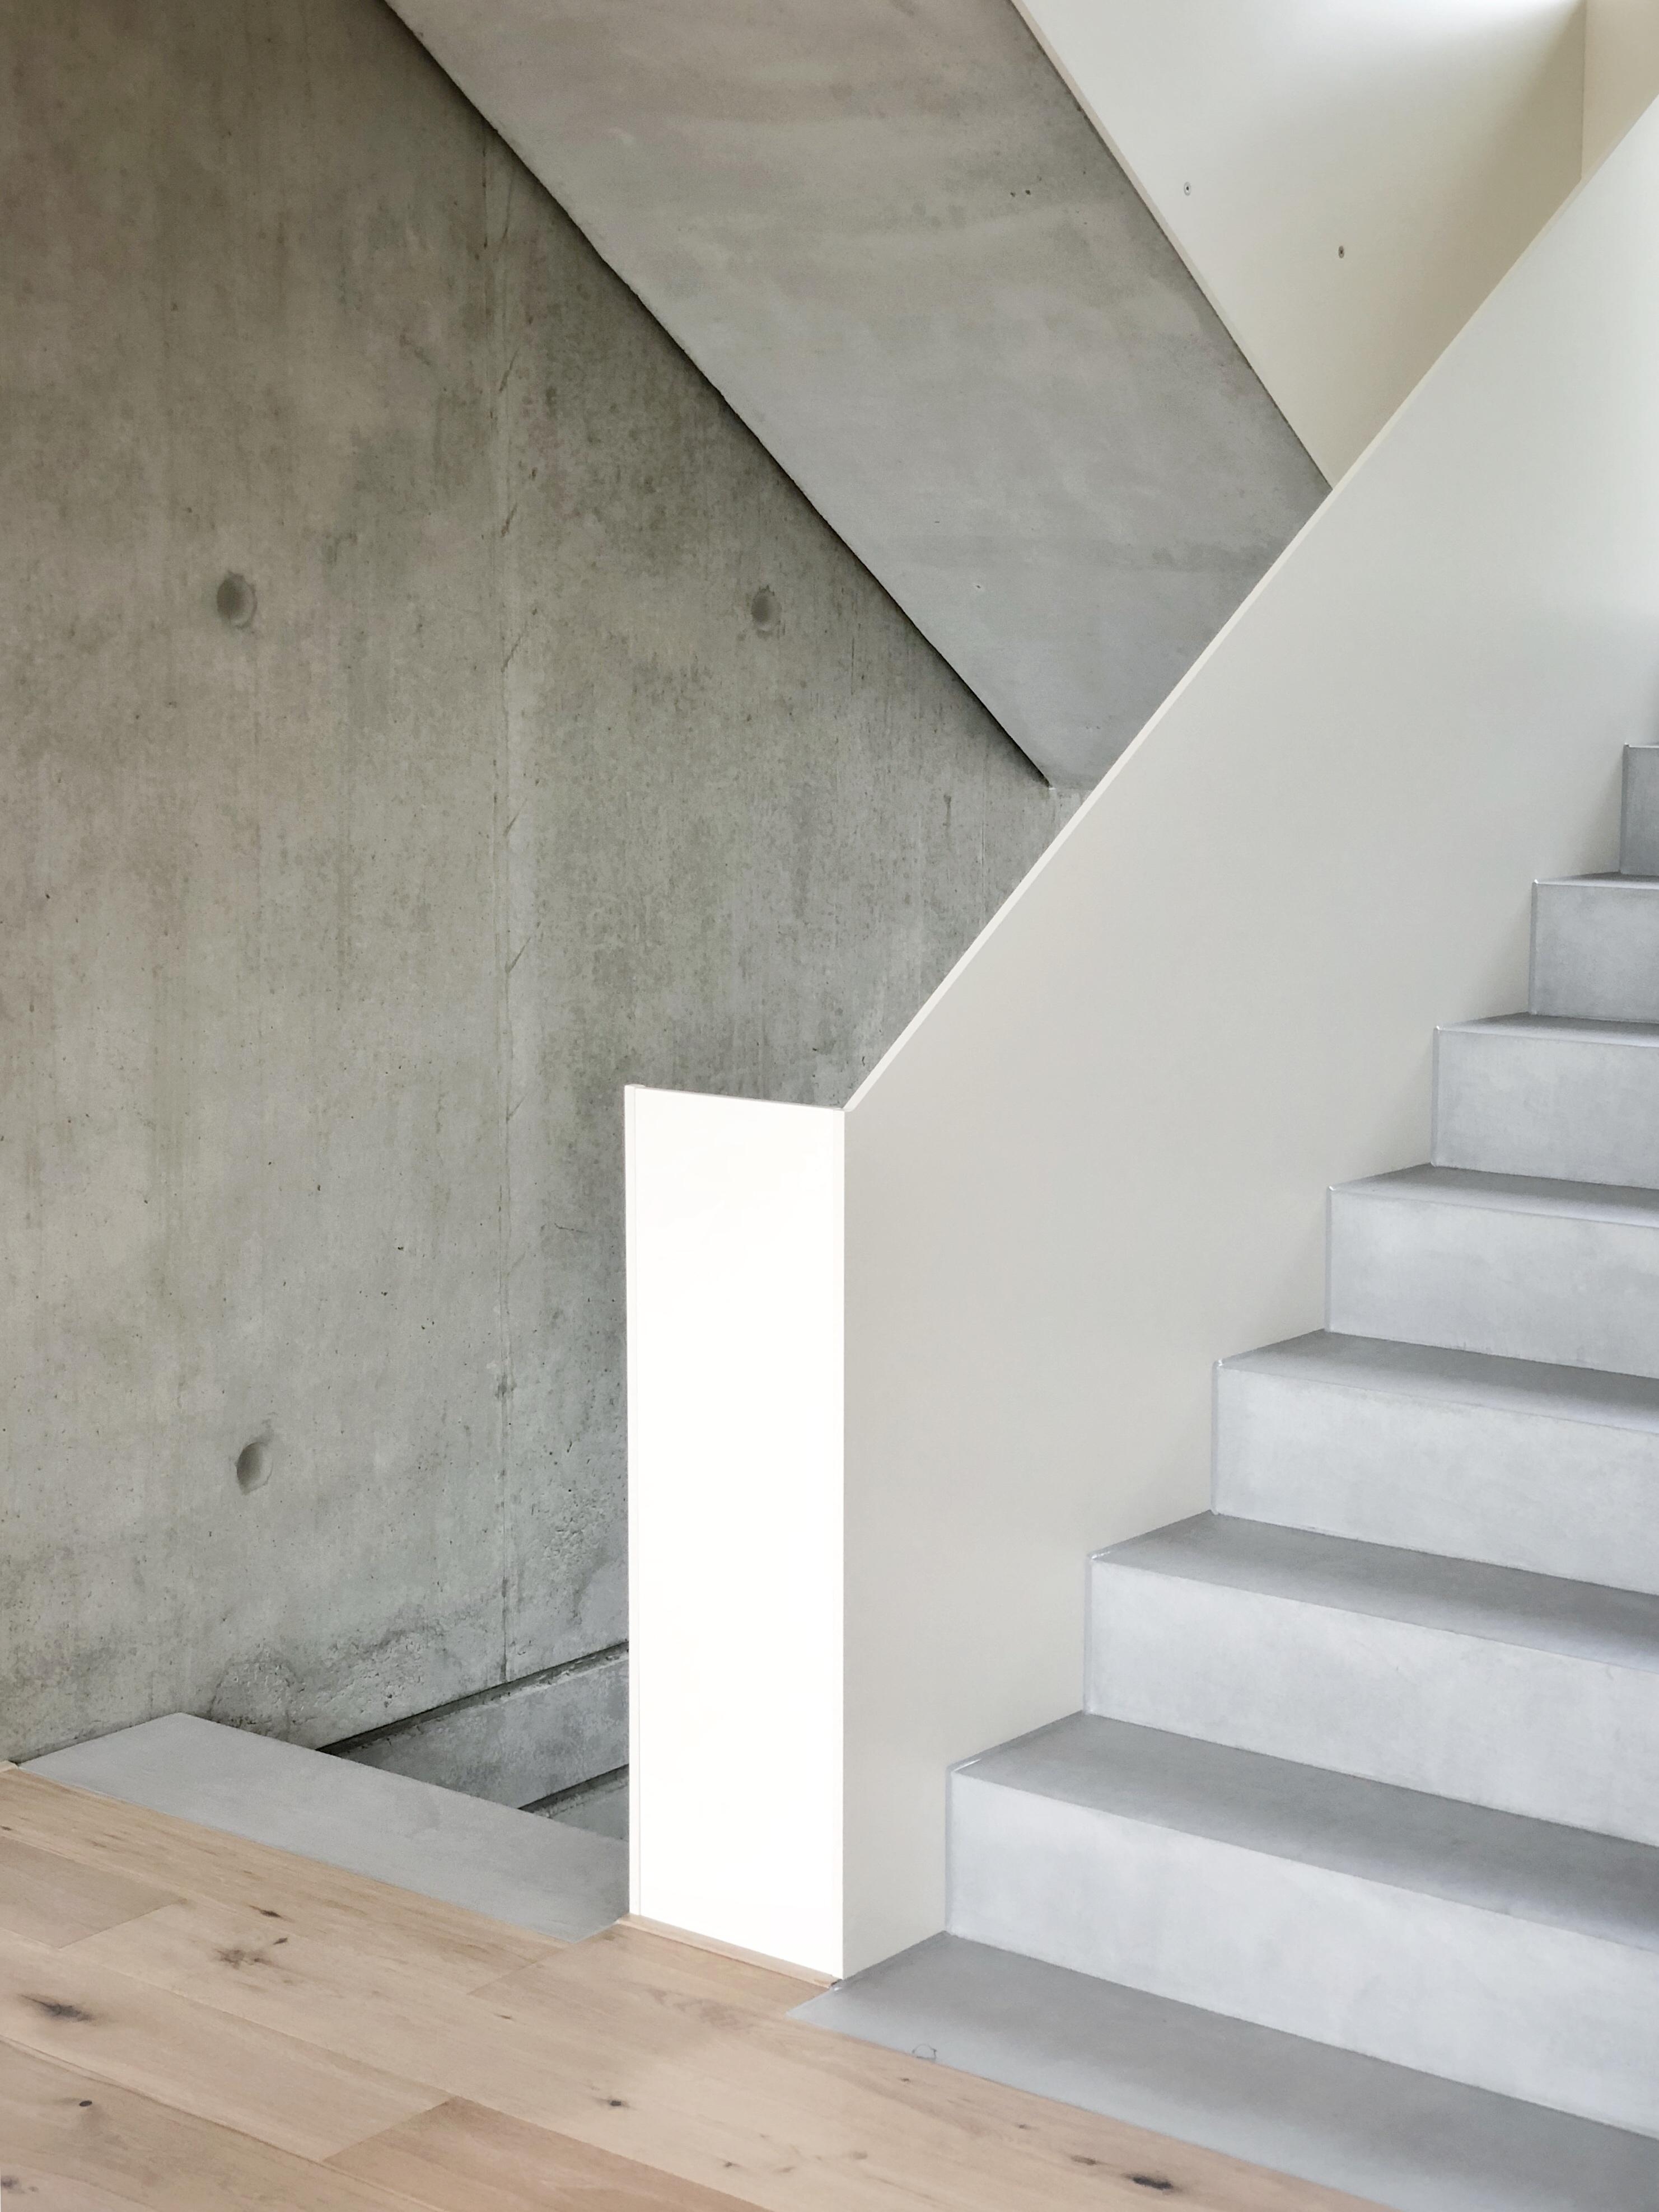 Unsere Treppe ist fertig!
#treppe#sichtbeton#betoncire#pur#minimalism